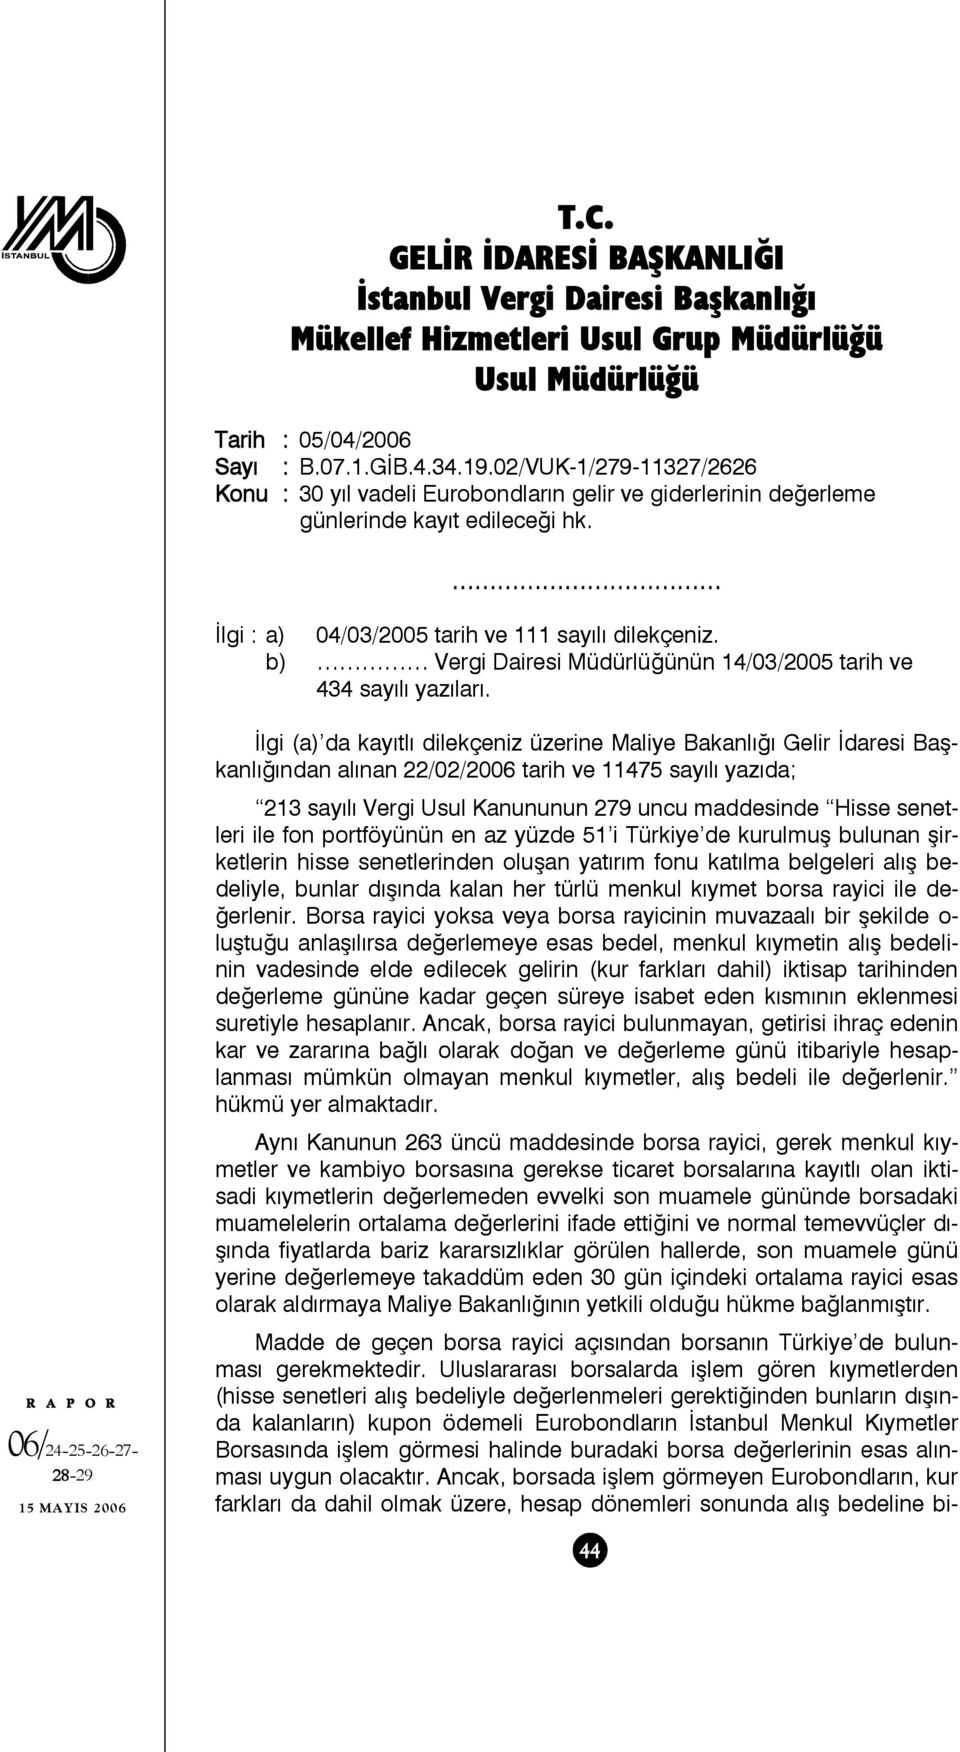 b) Vergi Dairesi Müdürlüğünün 14/03/2005 tarih ve 434 sayılı yazıları. Madde de geçen borsa rayici açısından borsanın Türkiye de bulunması gerekmektedir.